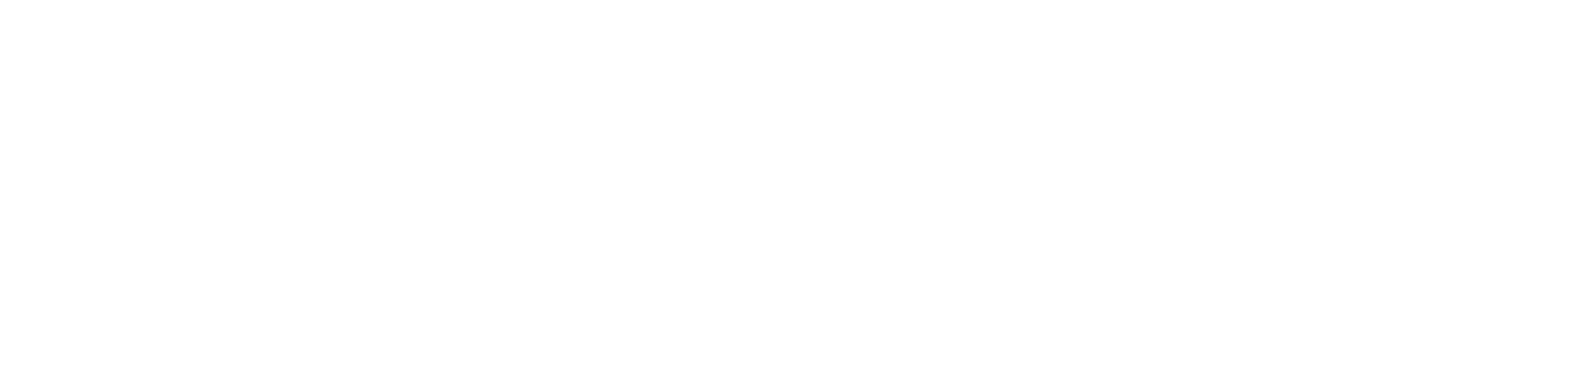 Nokia logo large for dark backgrounds (transparent PNG)